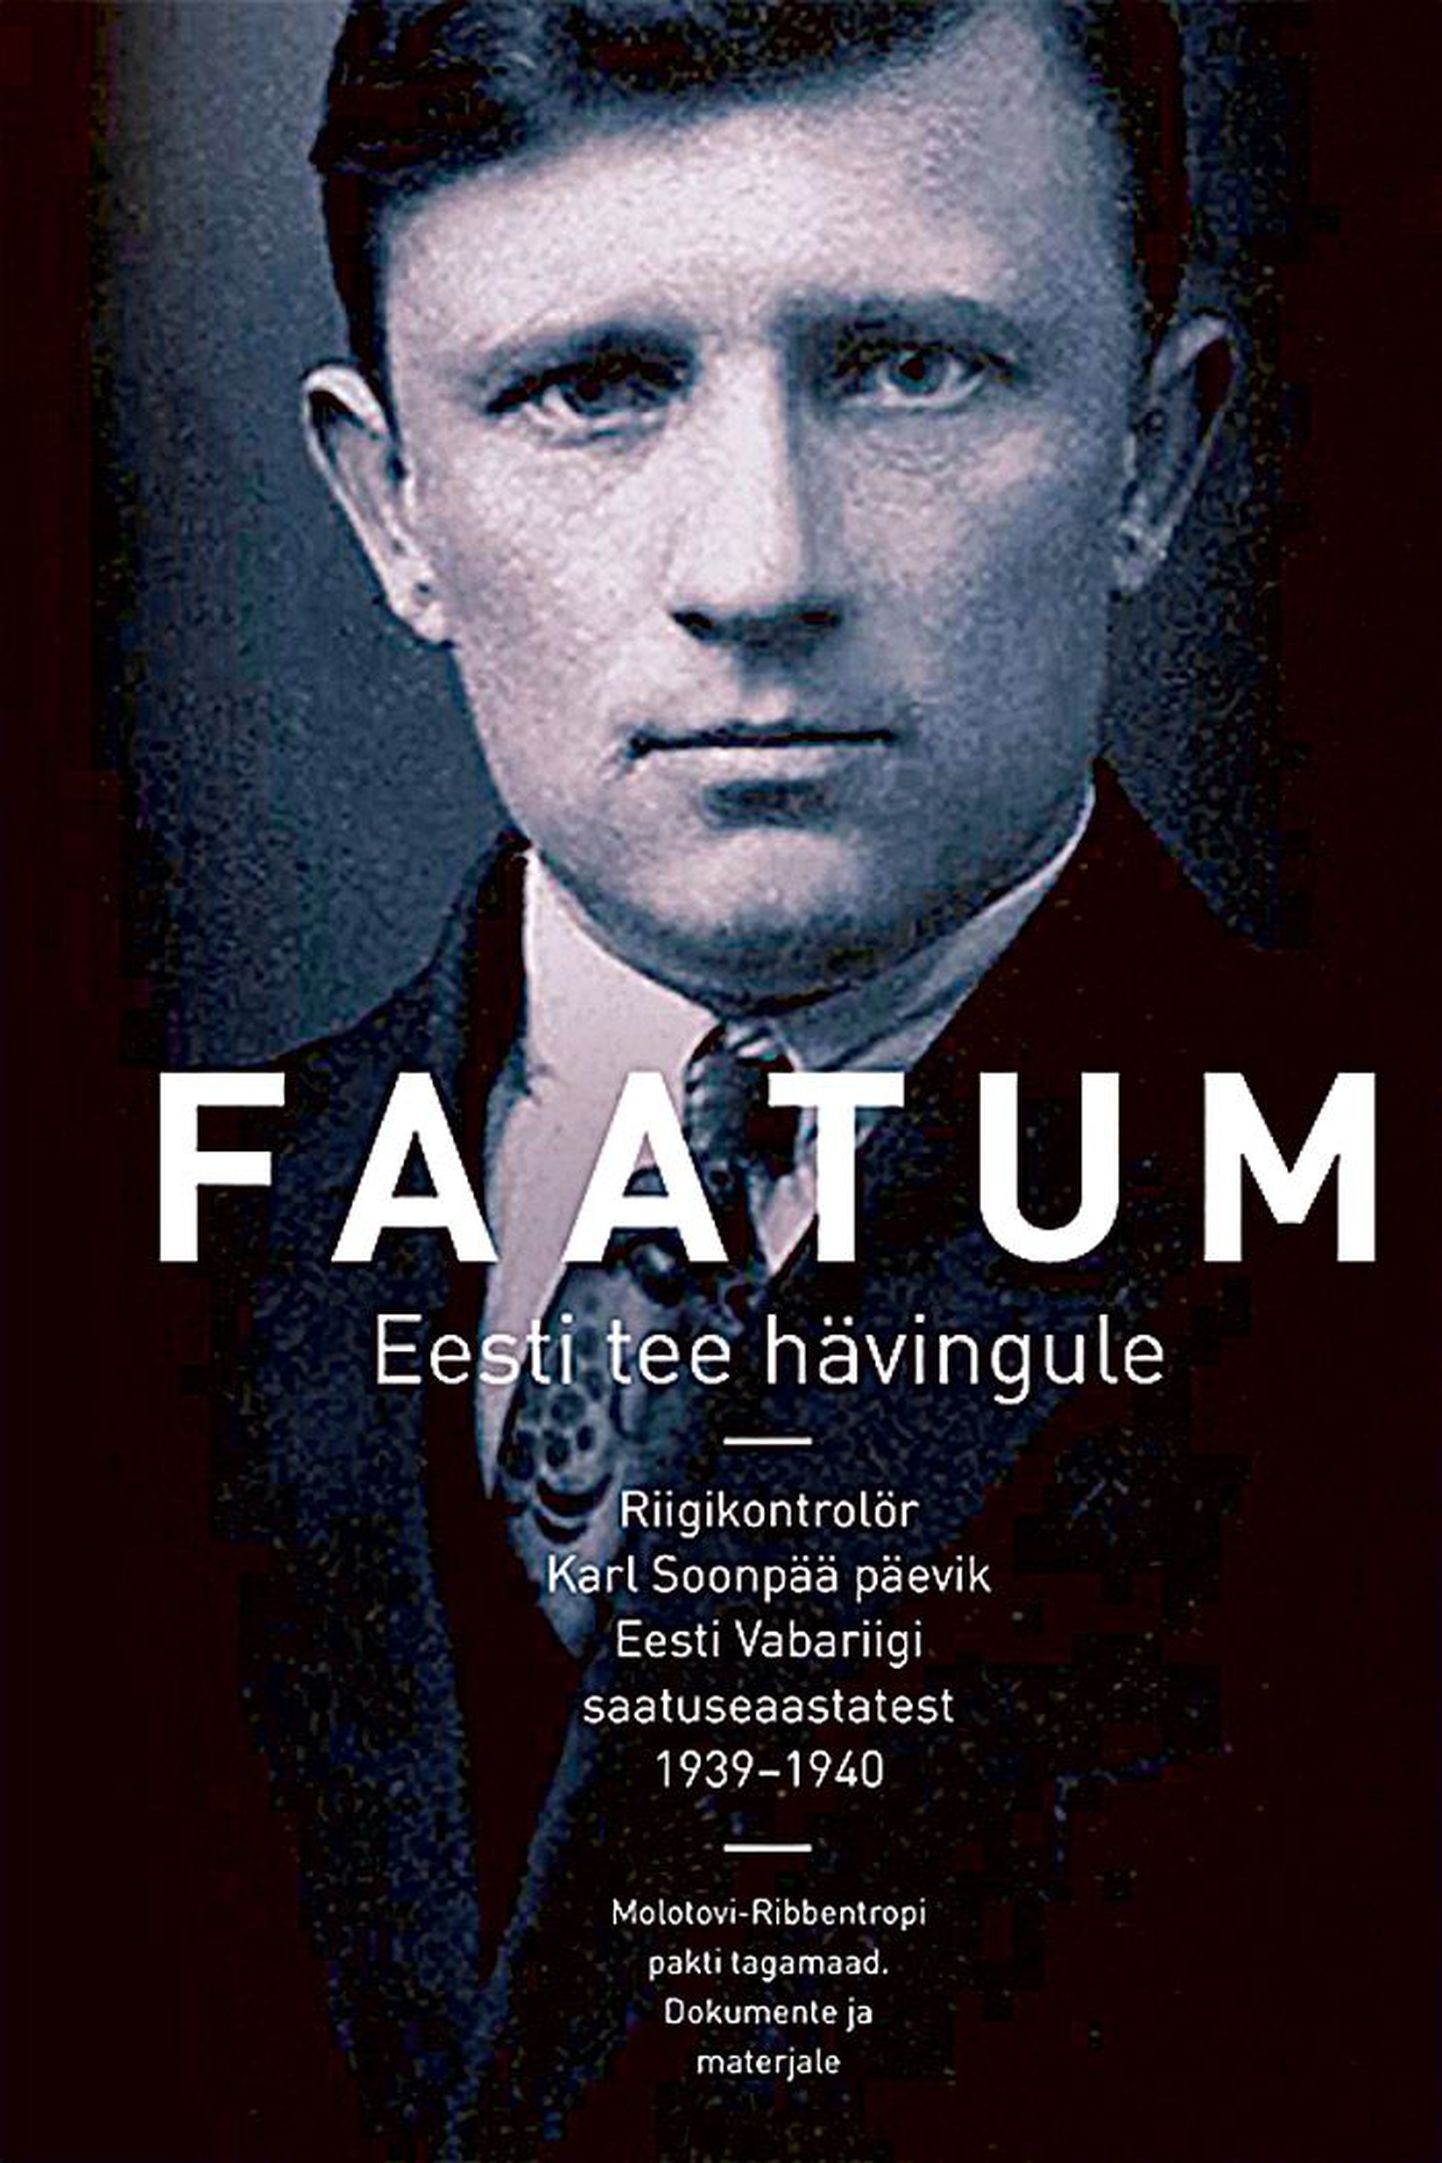 «FAATUM. Eesti tee hävingule»
Riigikontrolör Karl Soonpää päevik
Eesti Vabariigi saatuseaastatest
1939–1940.